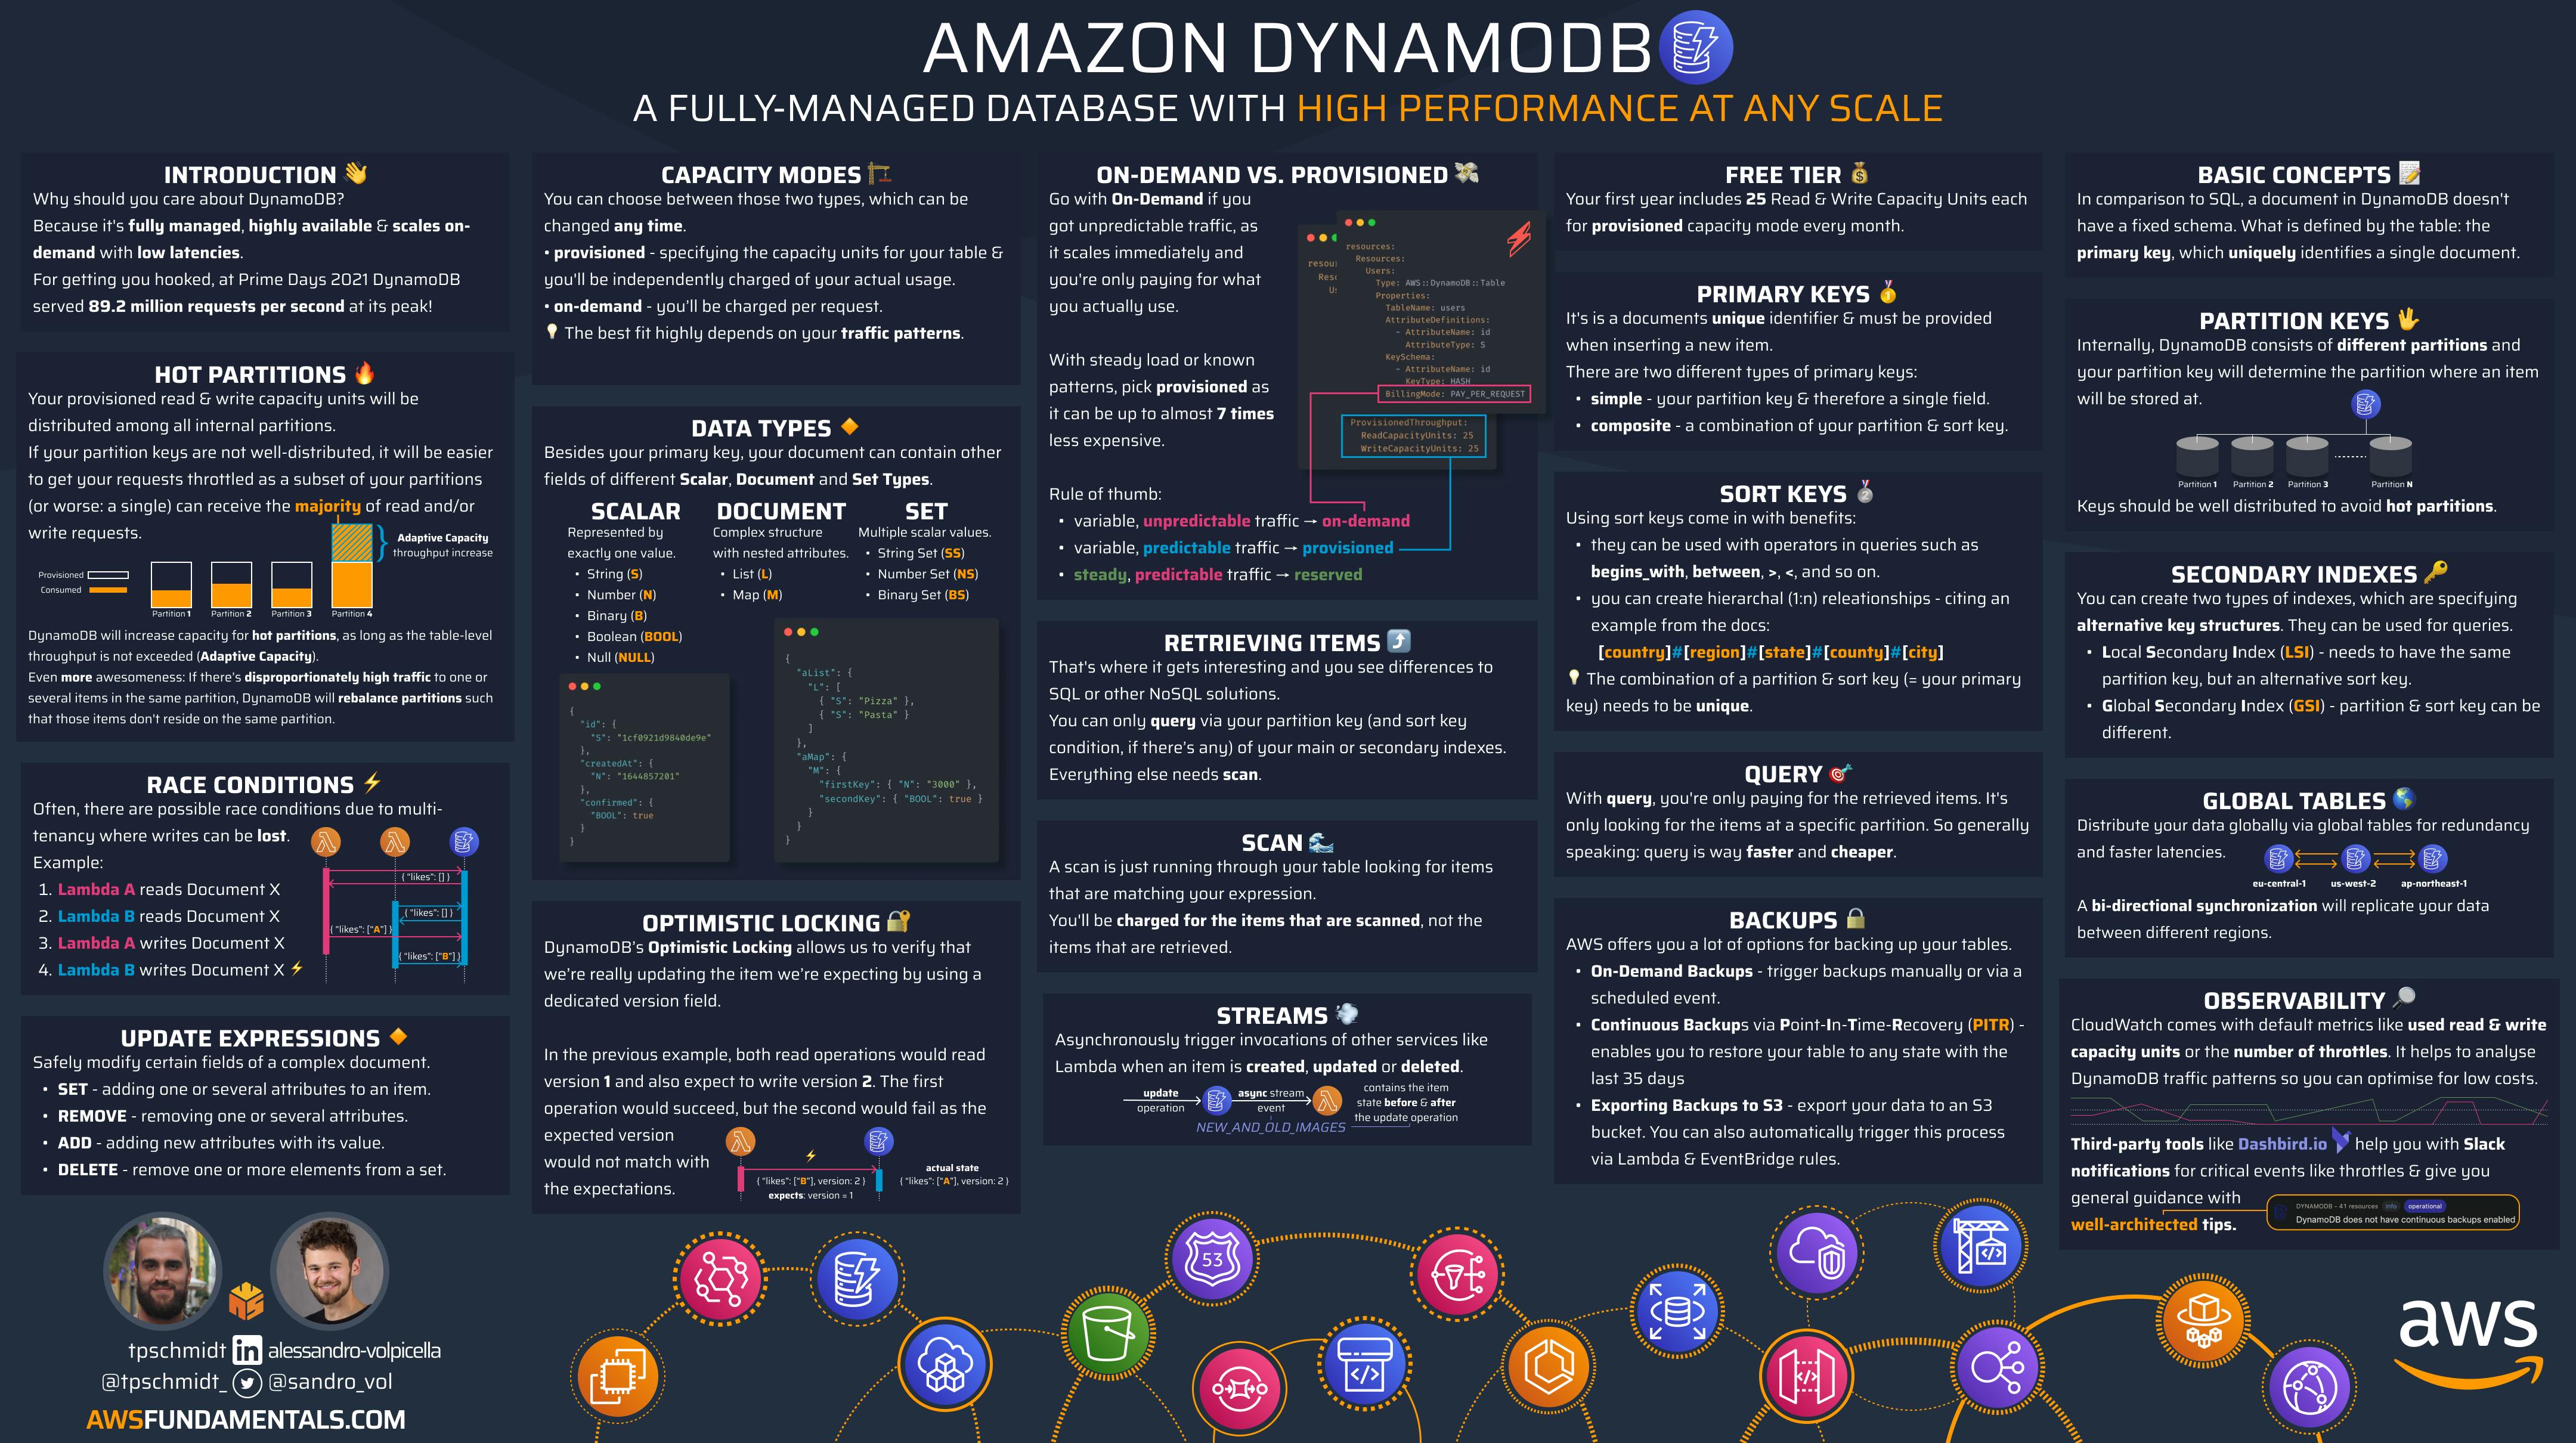 Amazon DynamoDB - the fundamentals of Amazon's flagship database service explained.